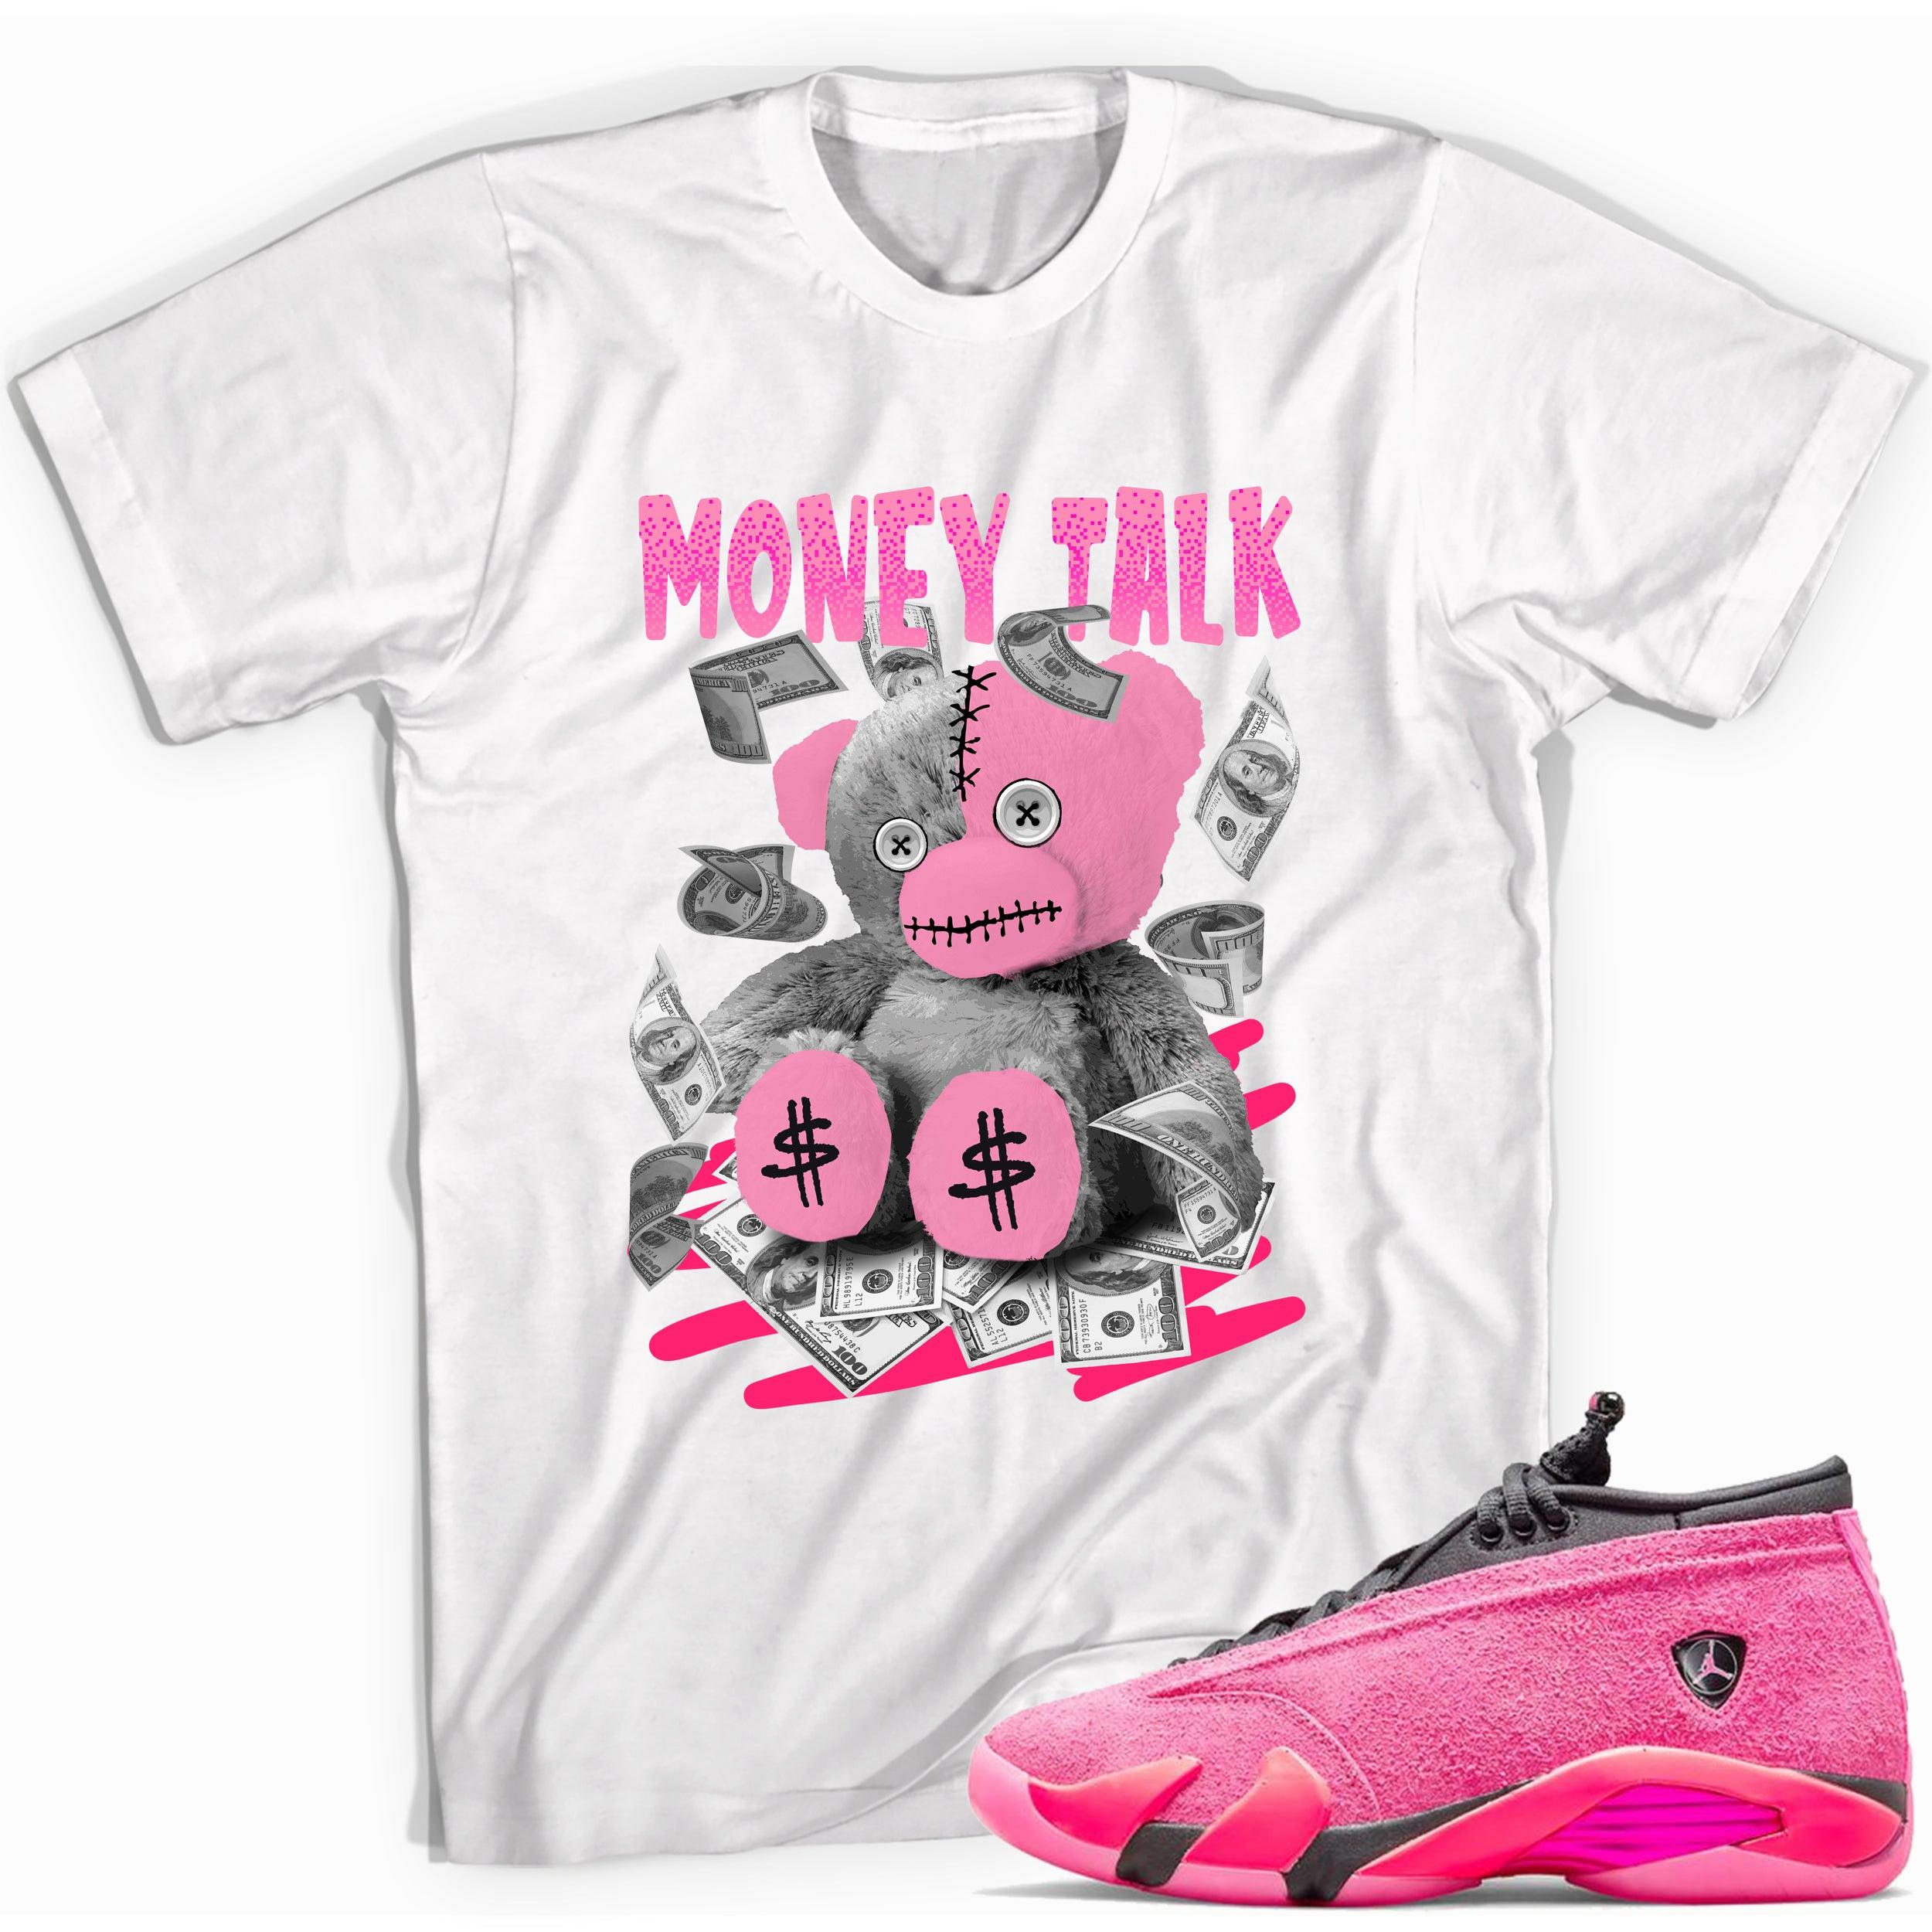  Money Talk Shirt Jordan 14s Low Shocking Pink photo